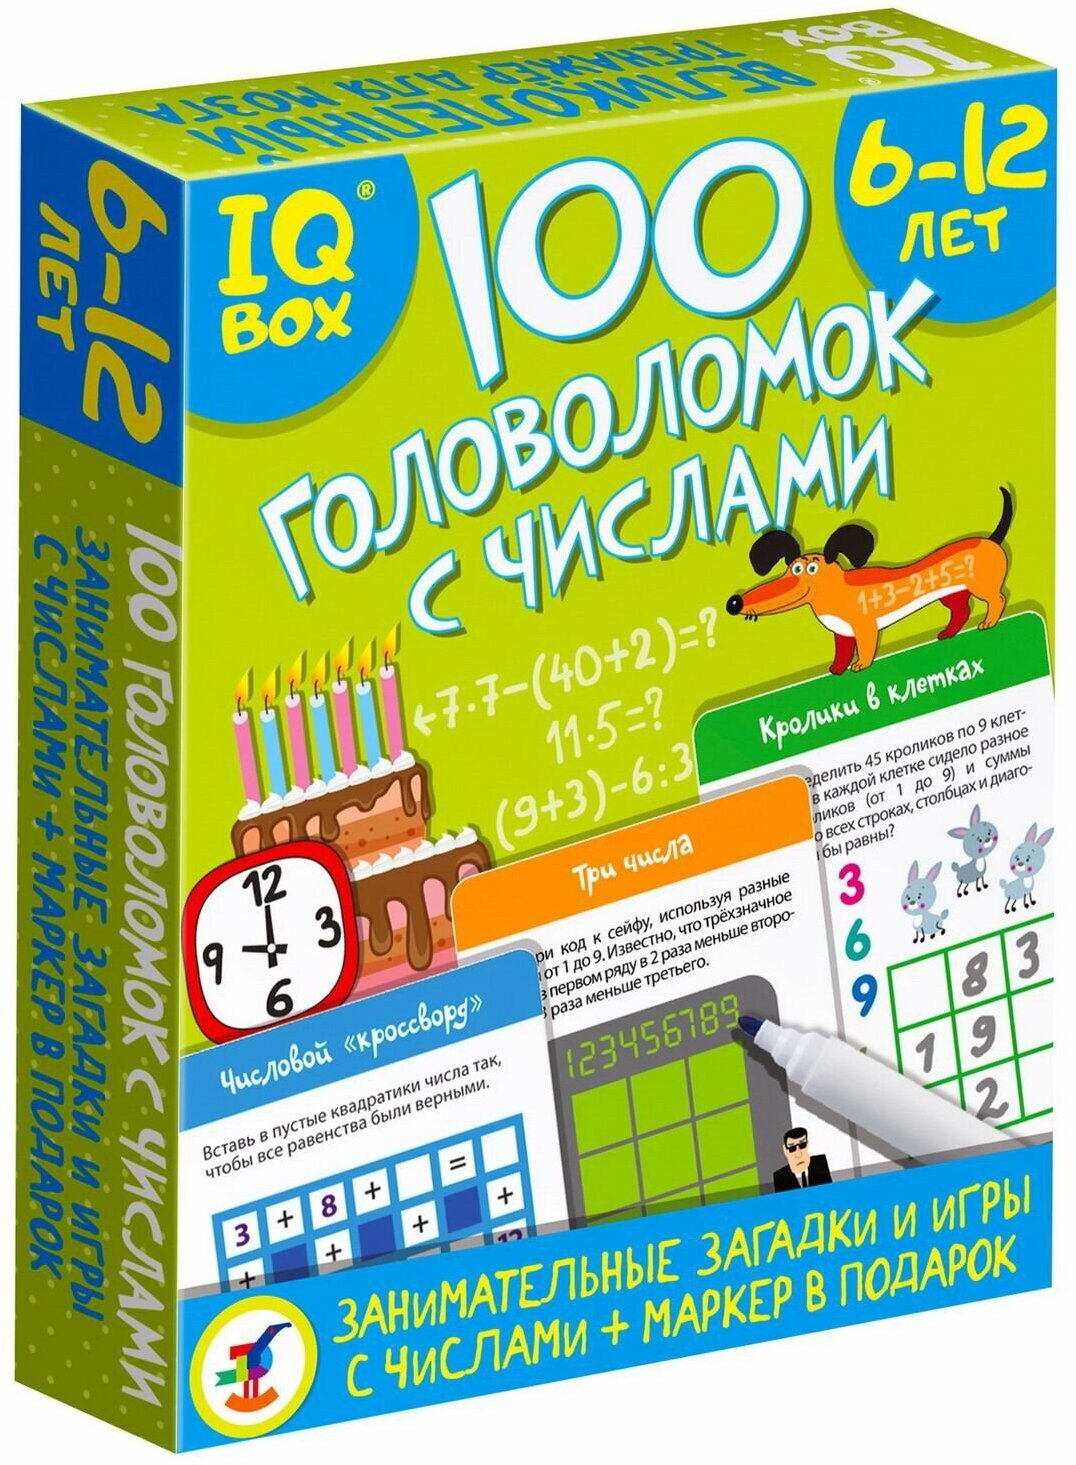 Головоломка Дрофа-Медиа IQ Box "100 Головоломок с числами" занимательные загадки и игры (4297)